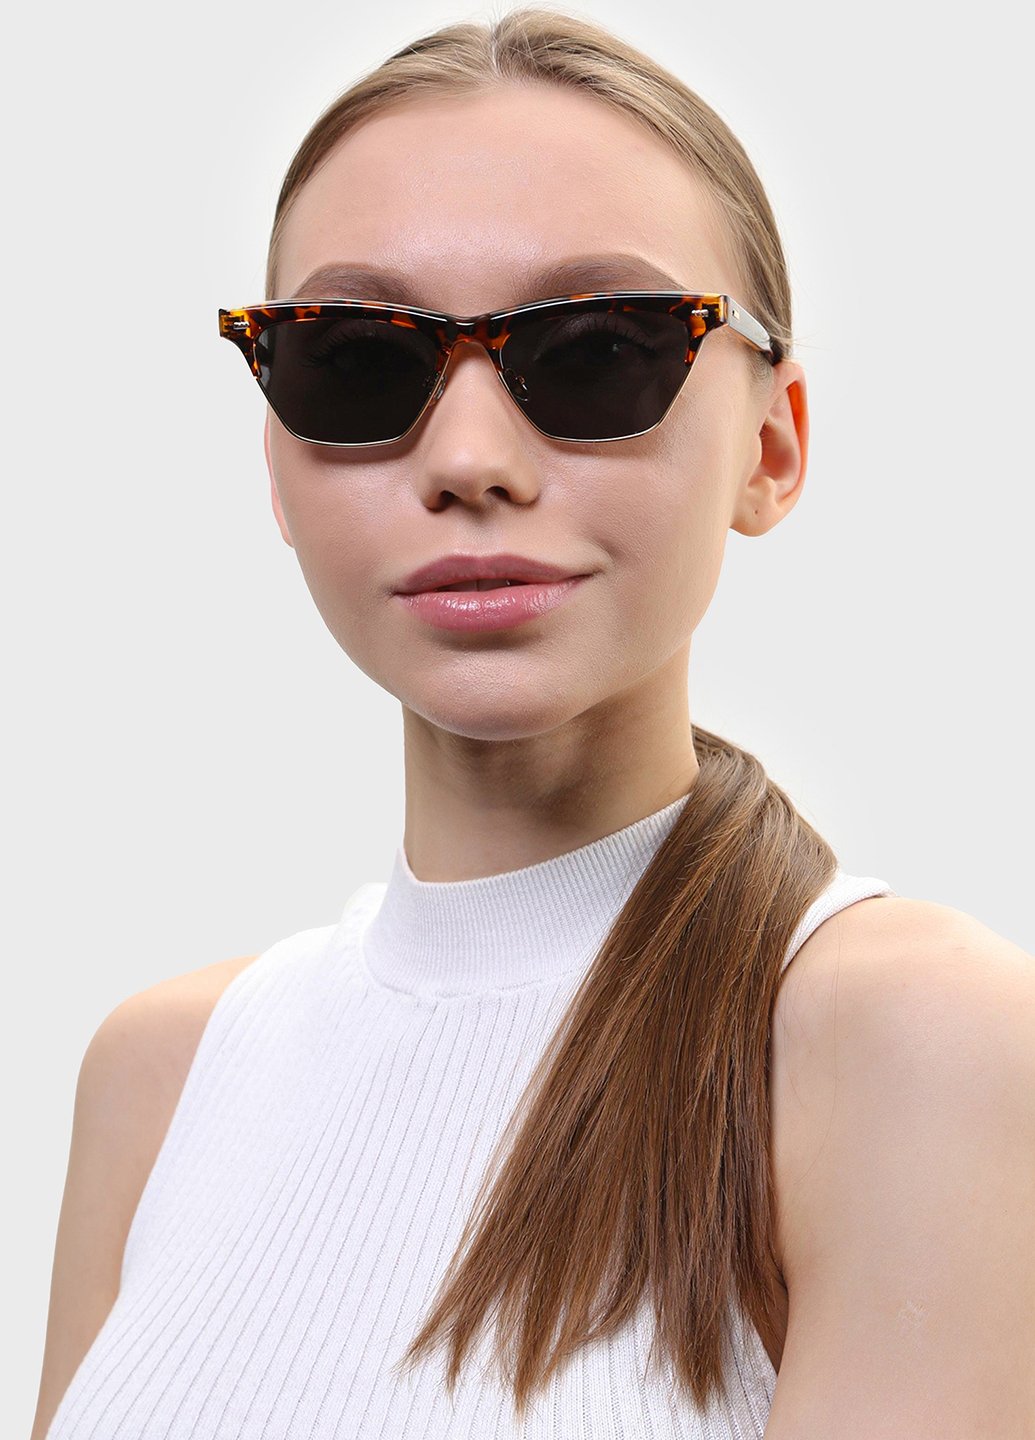 Купить Женские солнцезащитные очки Merlini с поляризацией S31719P 117004 - Коричневый в интернет-магазине